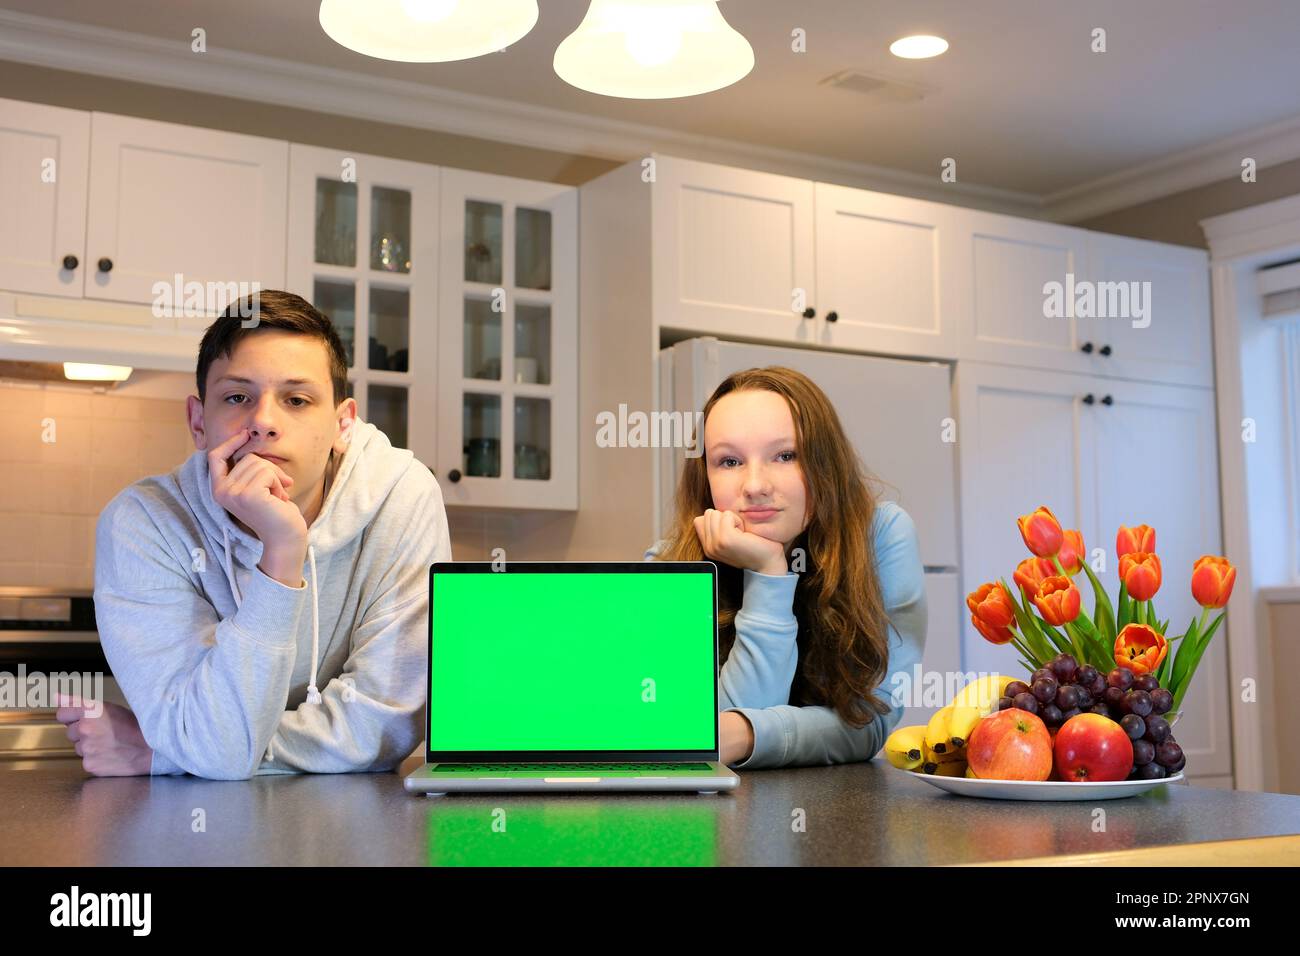 In der Küche zwei Teenager mit Computer Laptop grüner Bildschirm Chromakey Werbeplatz für Textangebote Verkauf Lieferung Blumen alles was man braucht Stockfoto